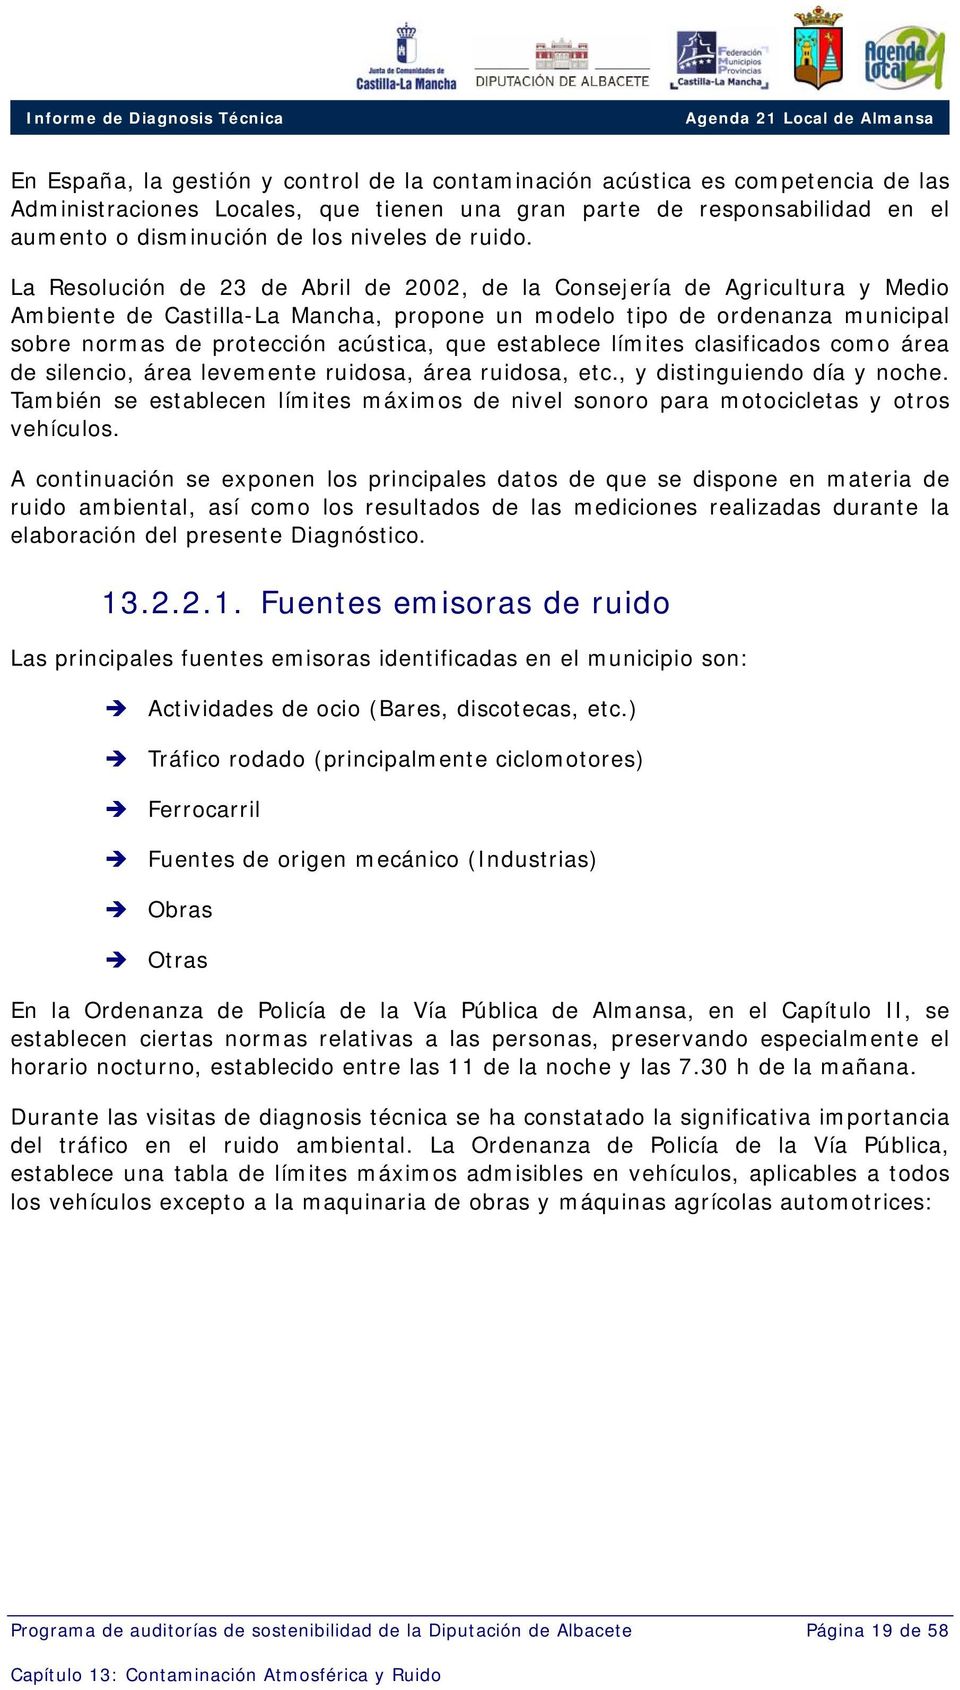 La Resolución de 23 de Abril de 2002, de la Consejería de Agricultura y Medio Ambiente de Castilla-La Mancha, propone un modelo tipo de ordenanza municipal sobre normas de protección acústica, que